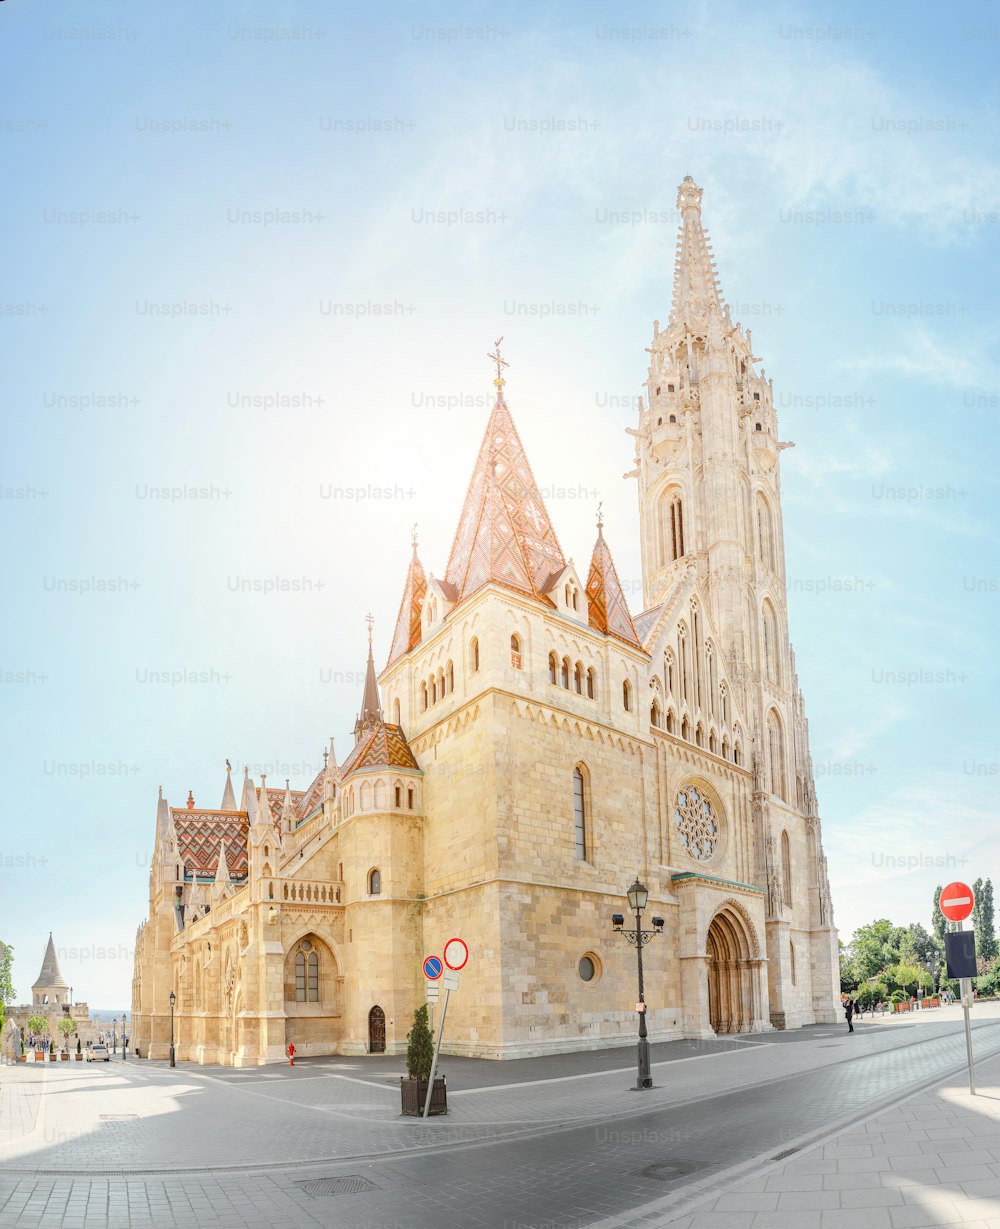 Haupttouristenattraktion und Wahrzeichen von Budapest - erstaunliche Architektur der Kathedrale von St. Matthias. Die Kirche ist der größte gotische Tempel in Ungarn.